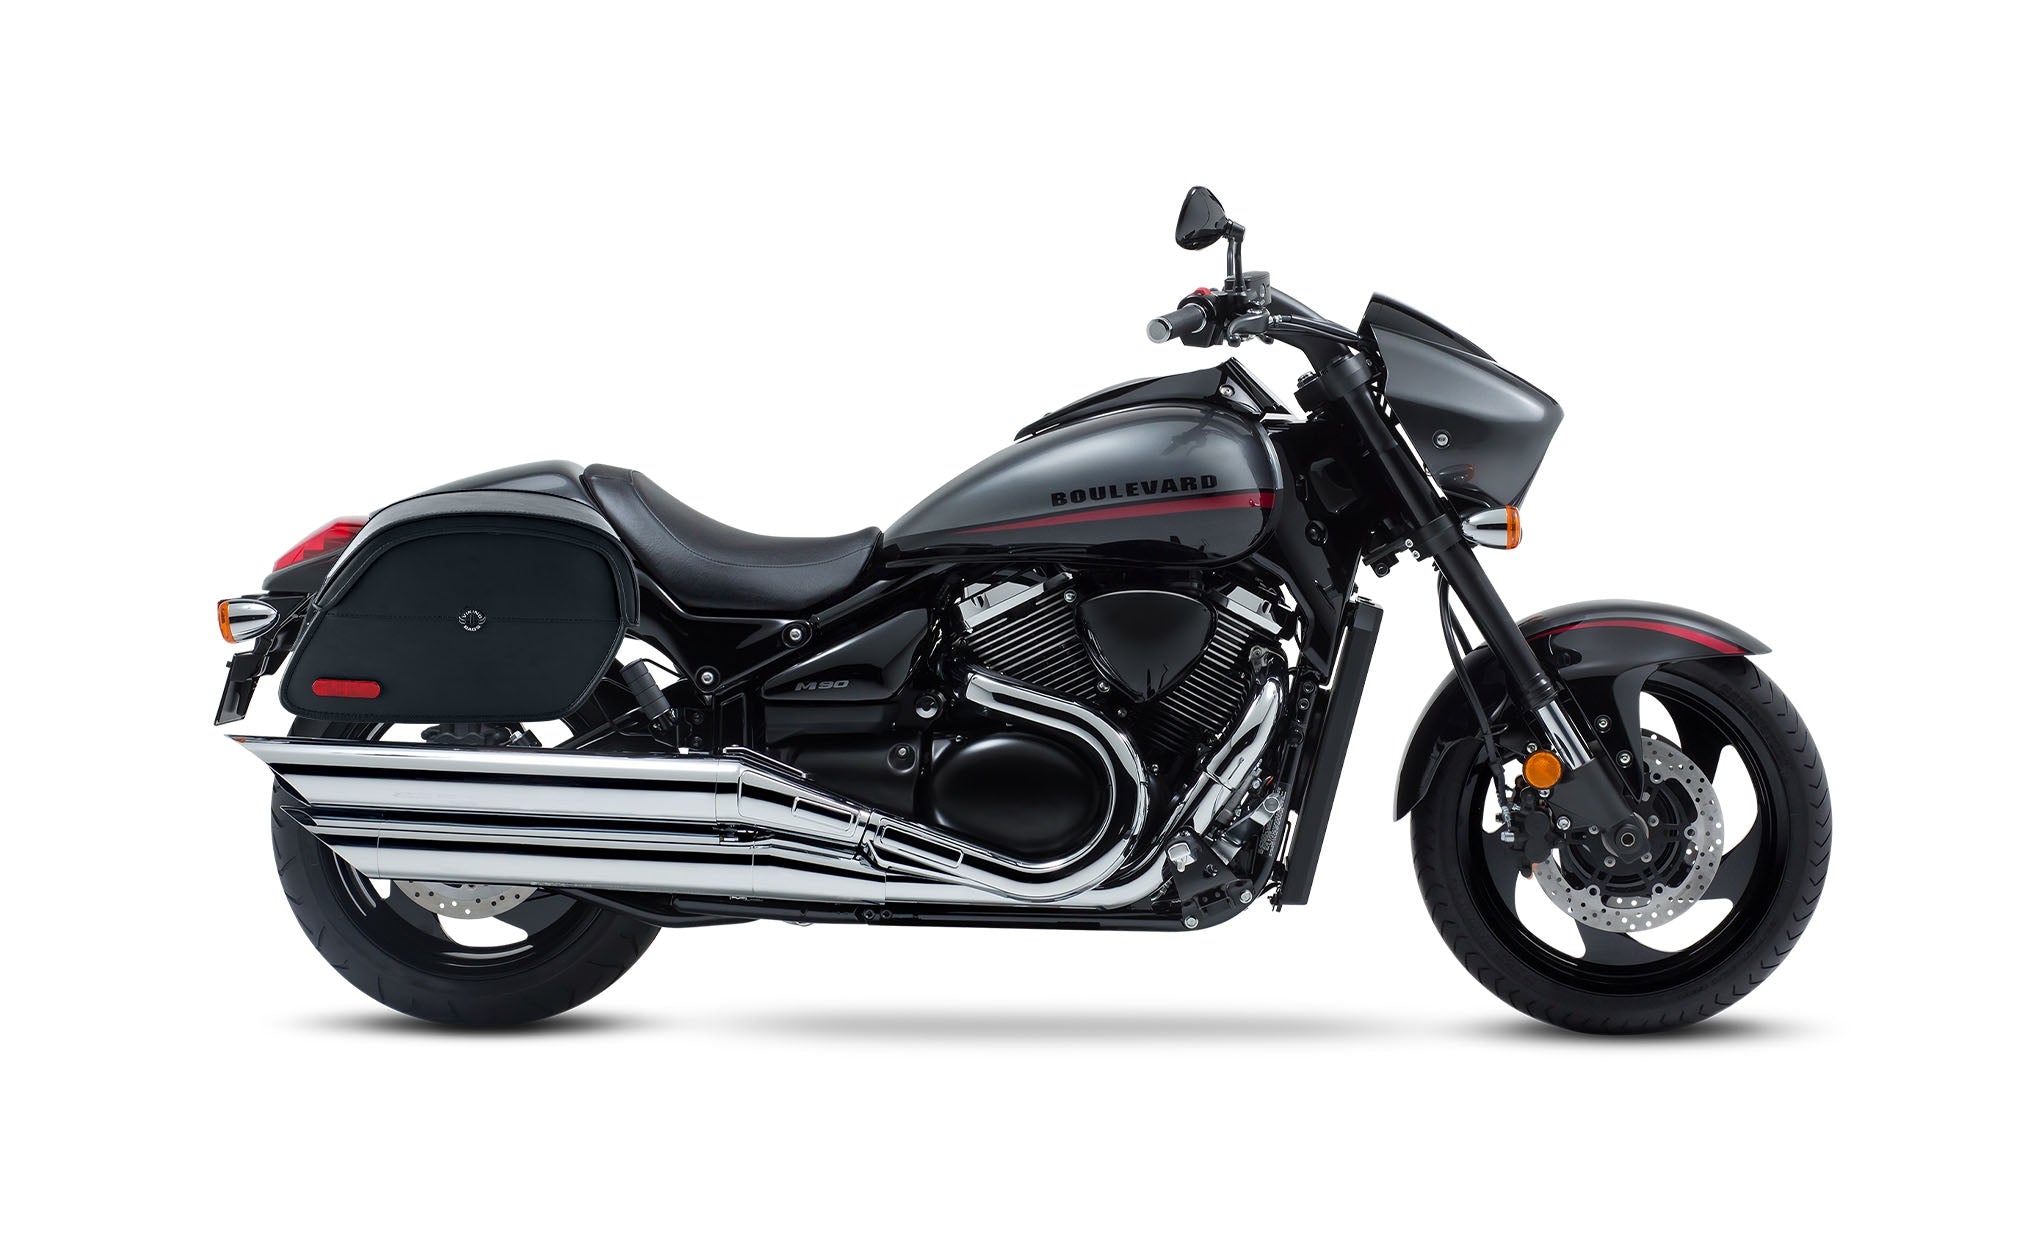 Viking California Large Suzuki Boulevard M90 Vz1500 Leather Motorcycle Saddlebags on Bike Photo @expand